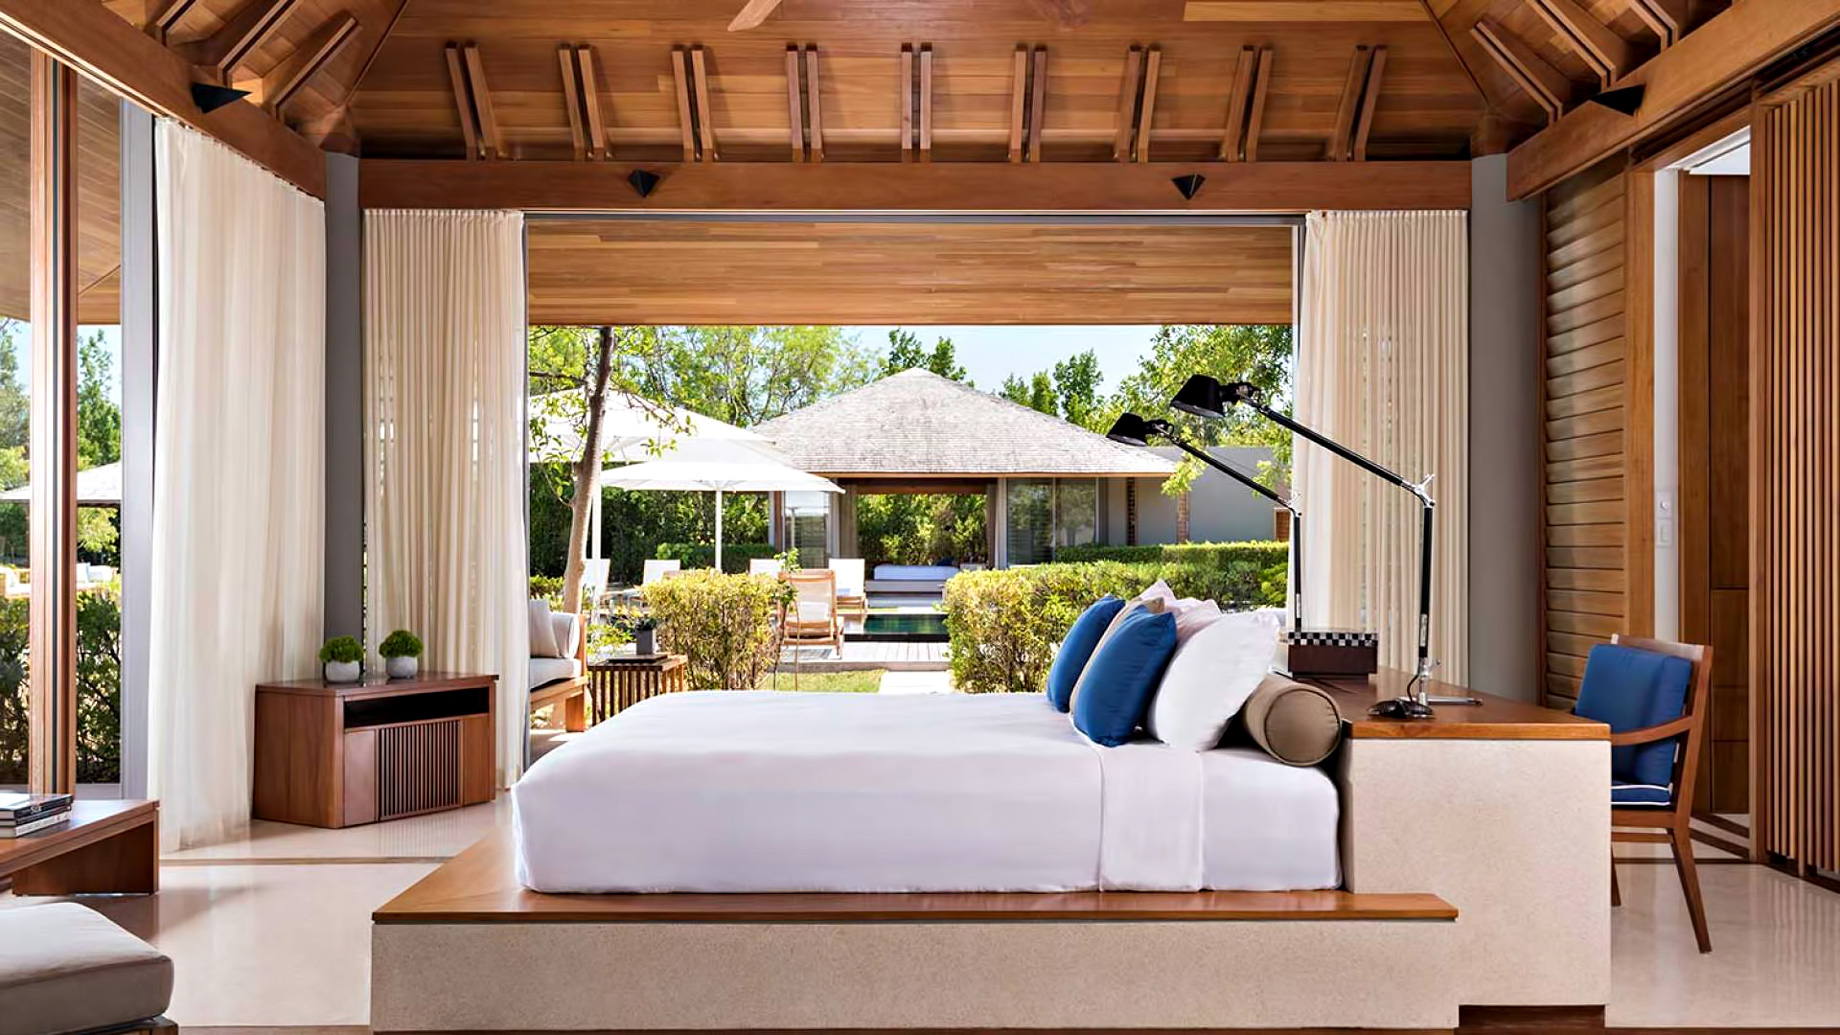 Amanyara Resort - Providenciales, Turks and Caicos Islands - 4 Bedroom Tranquility Villa Bedroom